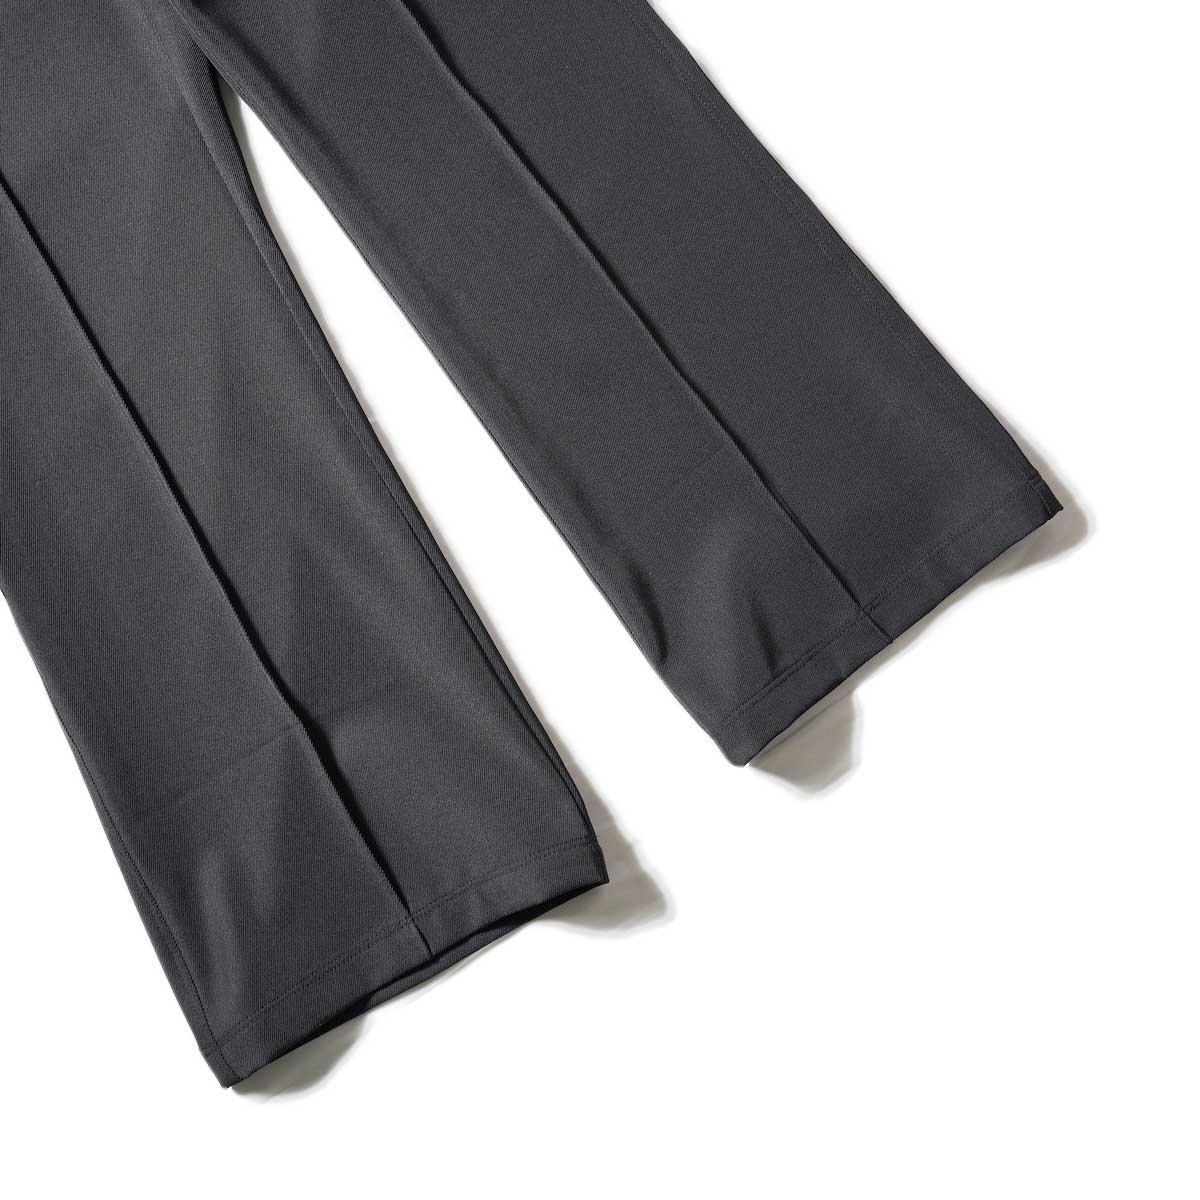 Needles / W.U. BOOT-CUT PANT - PE/R/PU CAVALRY TWILL (Black)裾